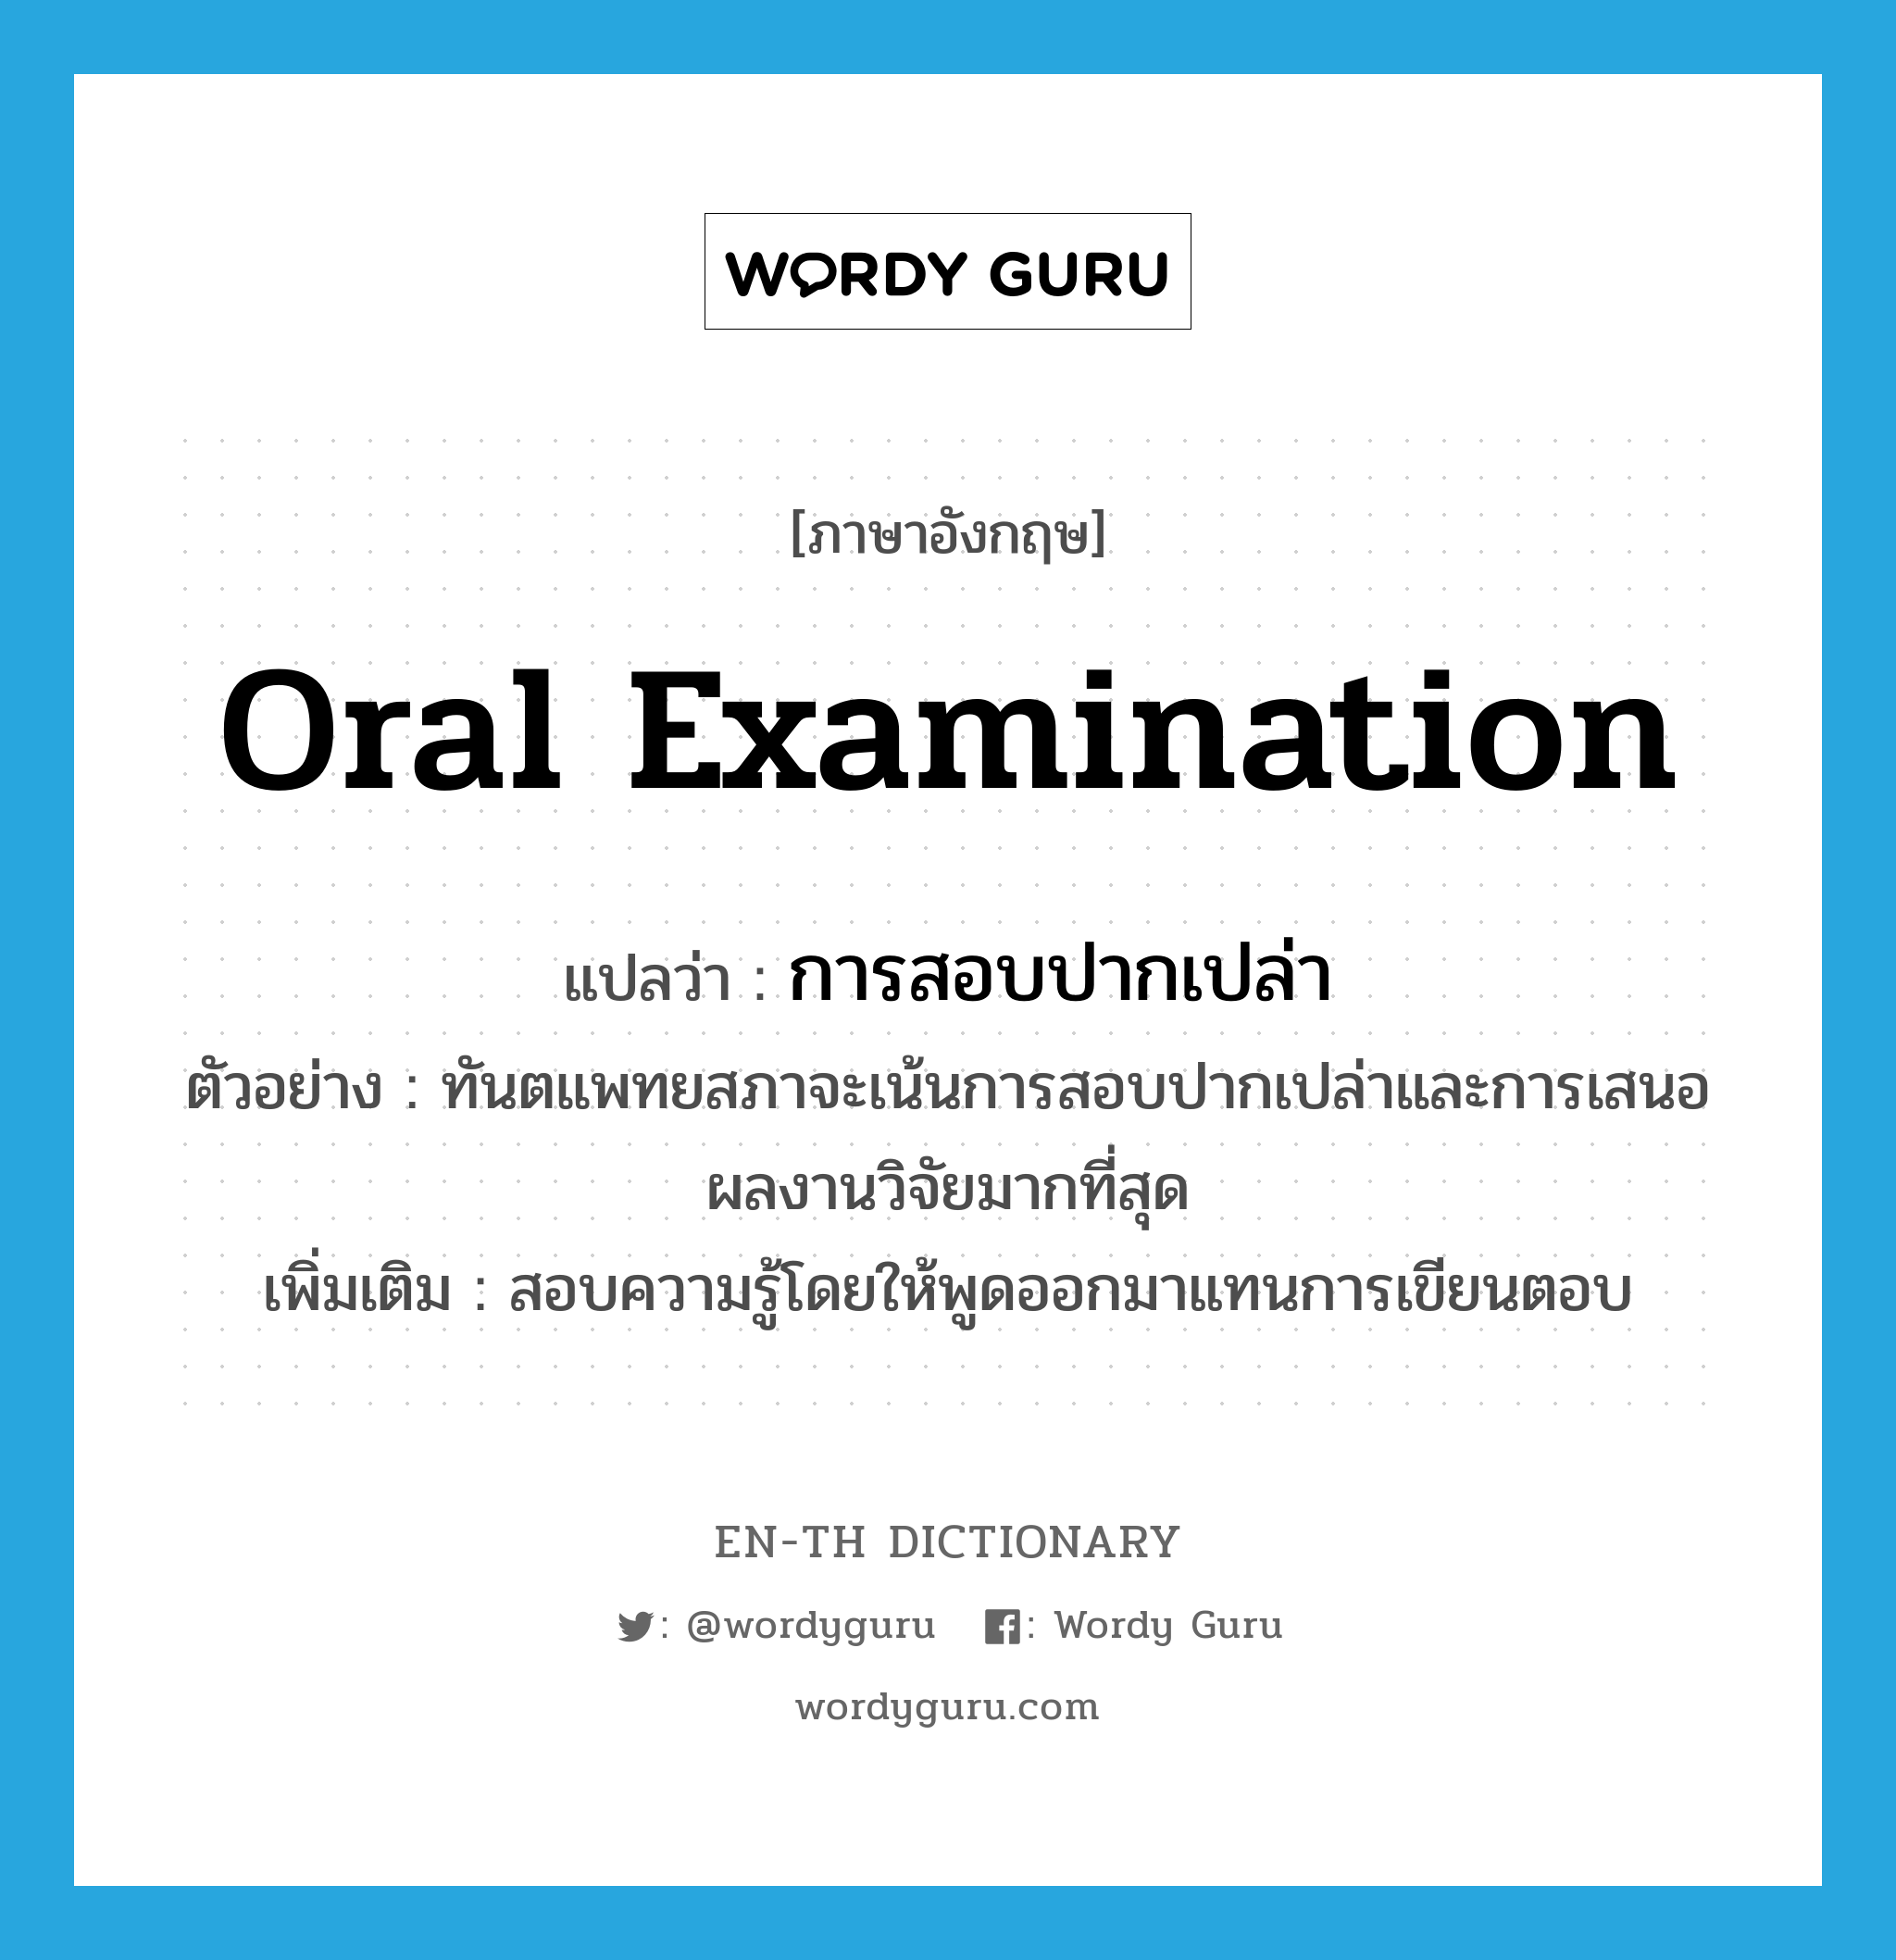 oral examination แปลว่า?, คำศัพท์ภาษาอังกฤษ oral examination แปลว่า การสอบปากเปล่า ประเภท N ตัวอย่าง ทันตแพทยสภาจะเน้นการสอบปากเปล่าและการเสนอผลงานวิจัยมากที่สุด เพิ่มเติม สอบความรู้โดยให้พูดออกมาแทนการเขียนตอบ หมวด N